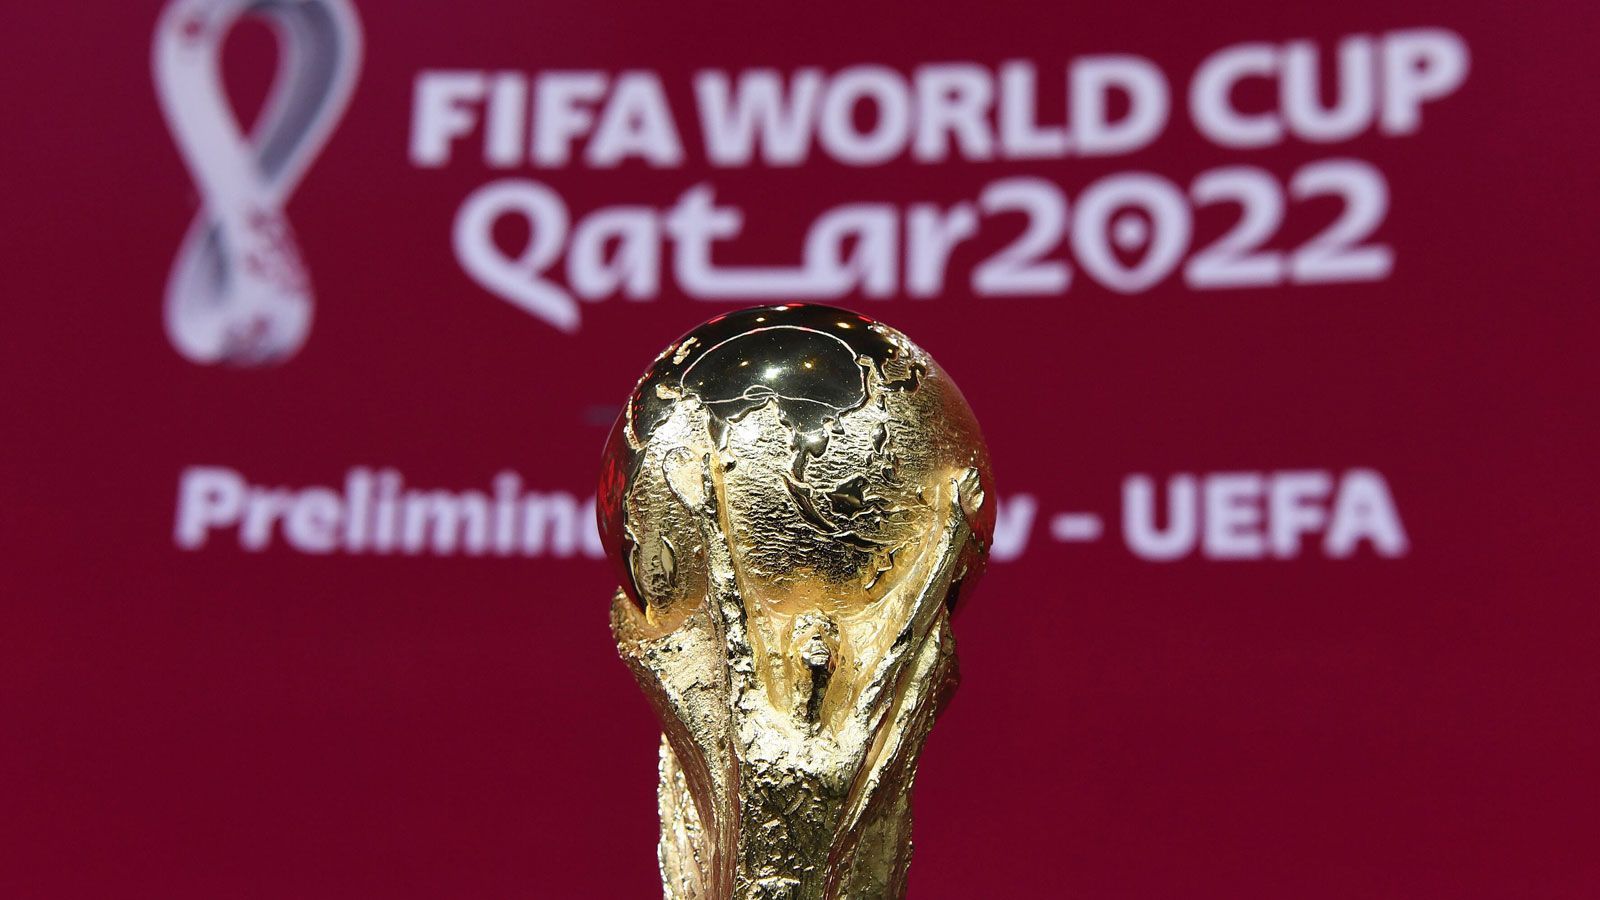 
                <strong>WM 2022 in Katar: Alles wie beim Handball?</strong><br>
                Rund sechs Monate vor der WM kommen die Superstars vermutlich zusammen. Wie das gehen soll? Ganz einfach: Die Vereine der Spieler erhalten eine saftige Entschädigung für die "superstarfreie Zeit".
              